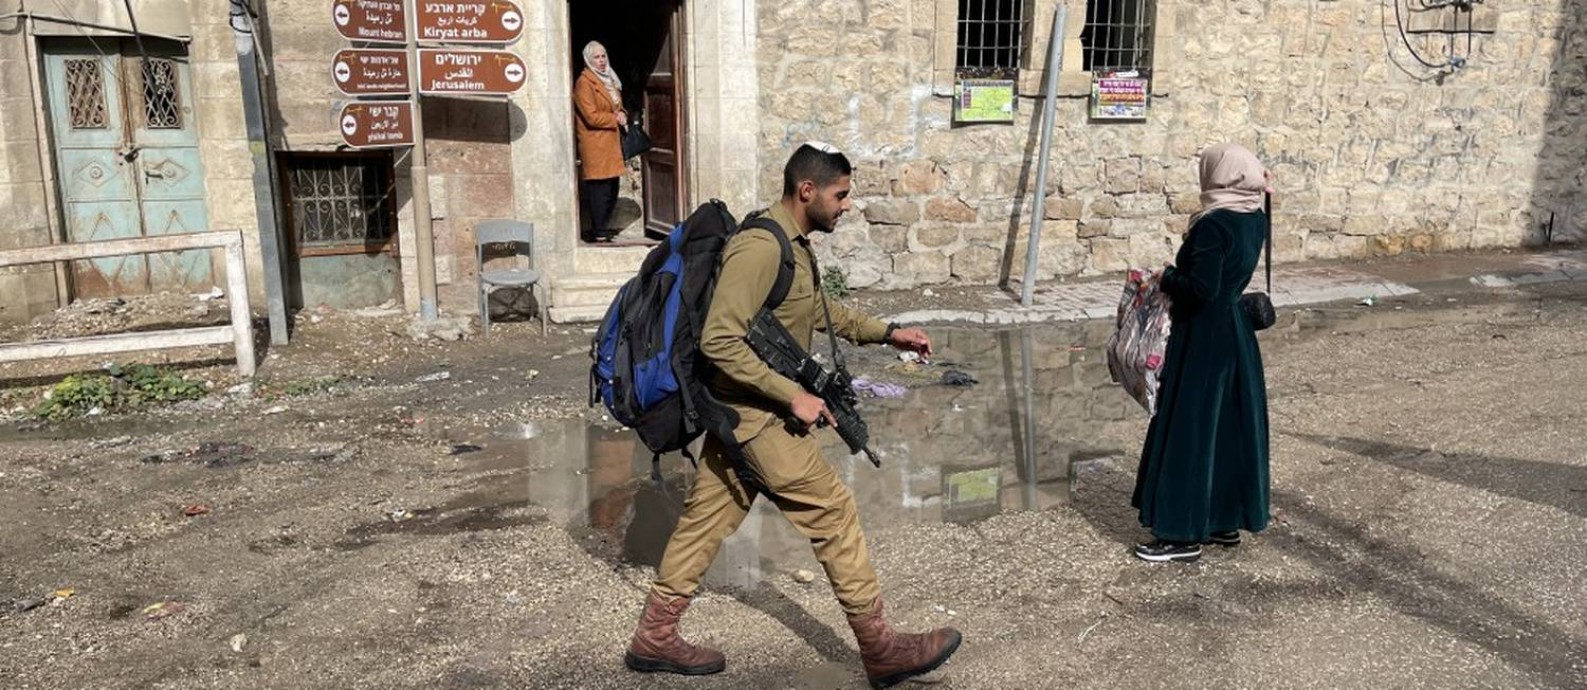 Soldado israelense passa por palestinas em Hebron, que teve seu centro esvaziado e onde foi estabelecida uma segregação entre árabes e judeus Foto: Paola de Orte